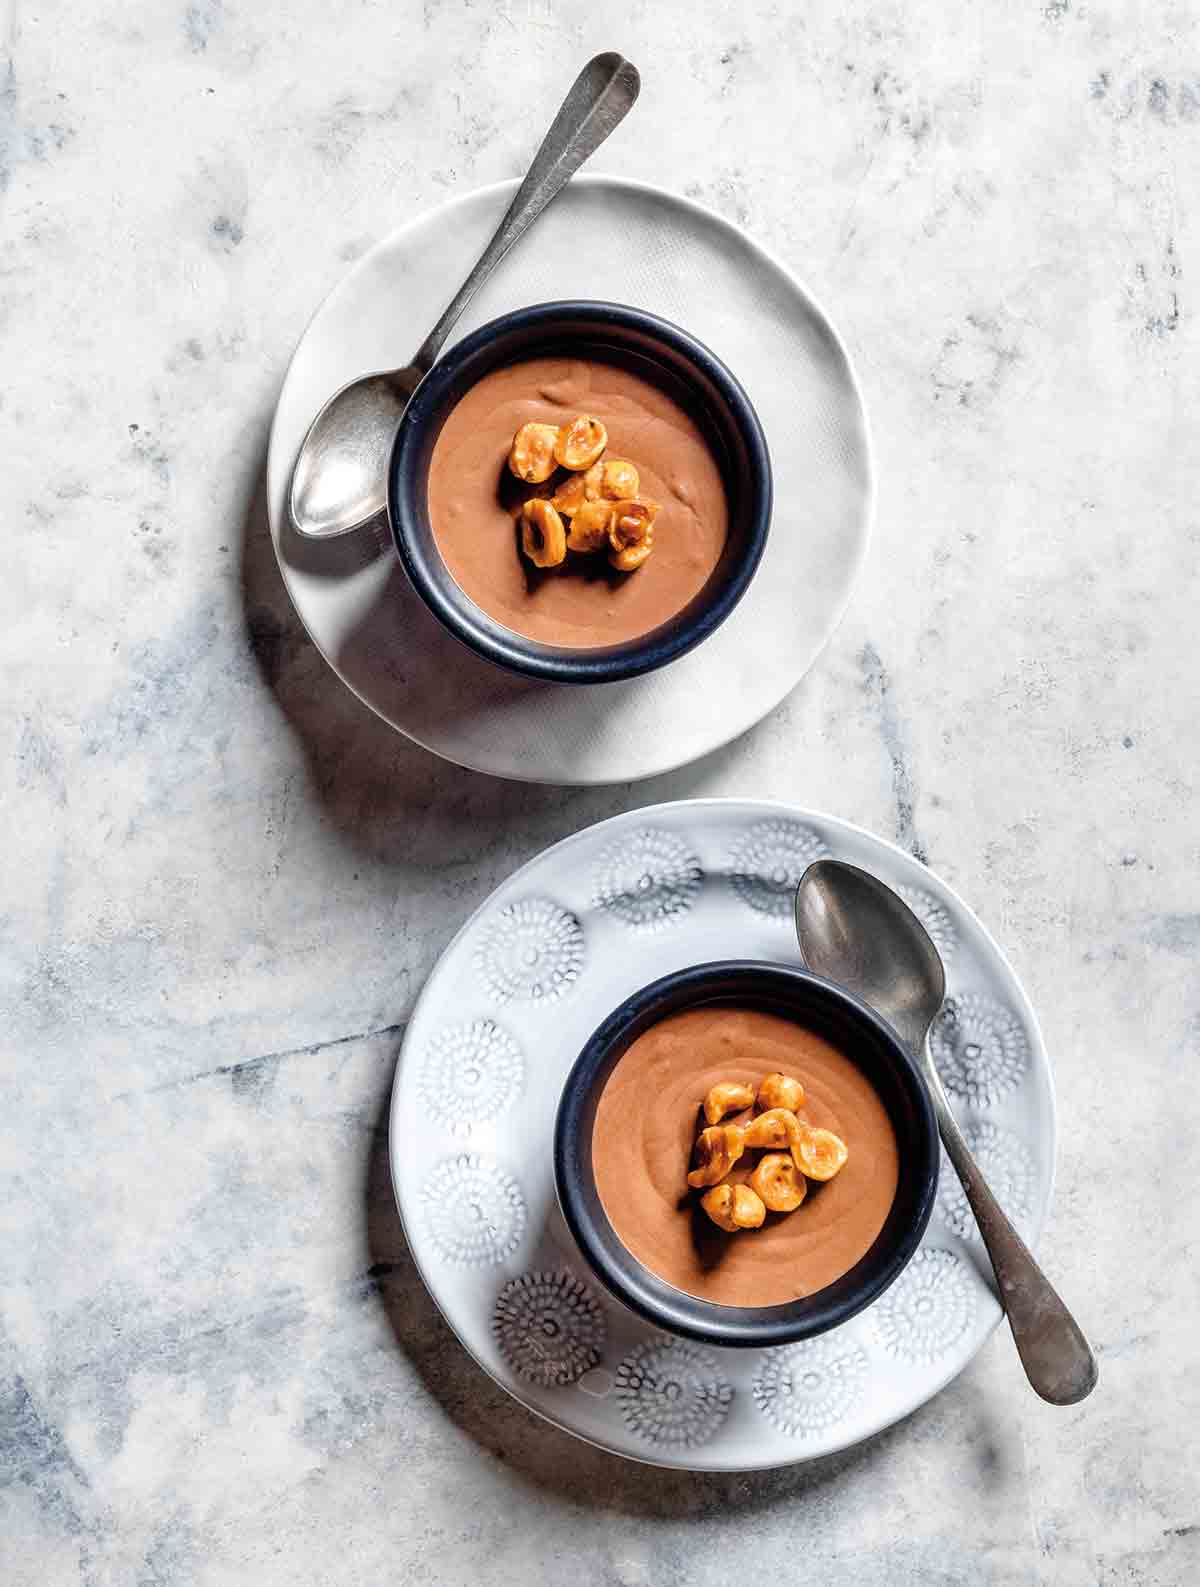 Två skålar fyllda med chokladmousse och kanderade hasselnötter ovanpå, sittande på tallrikar med en silversked på sidan av varje skål.